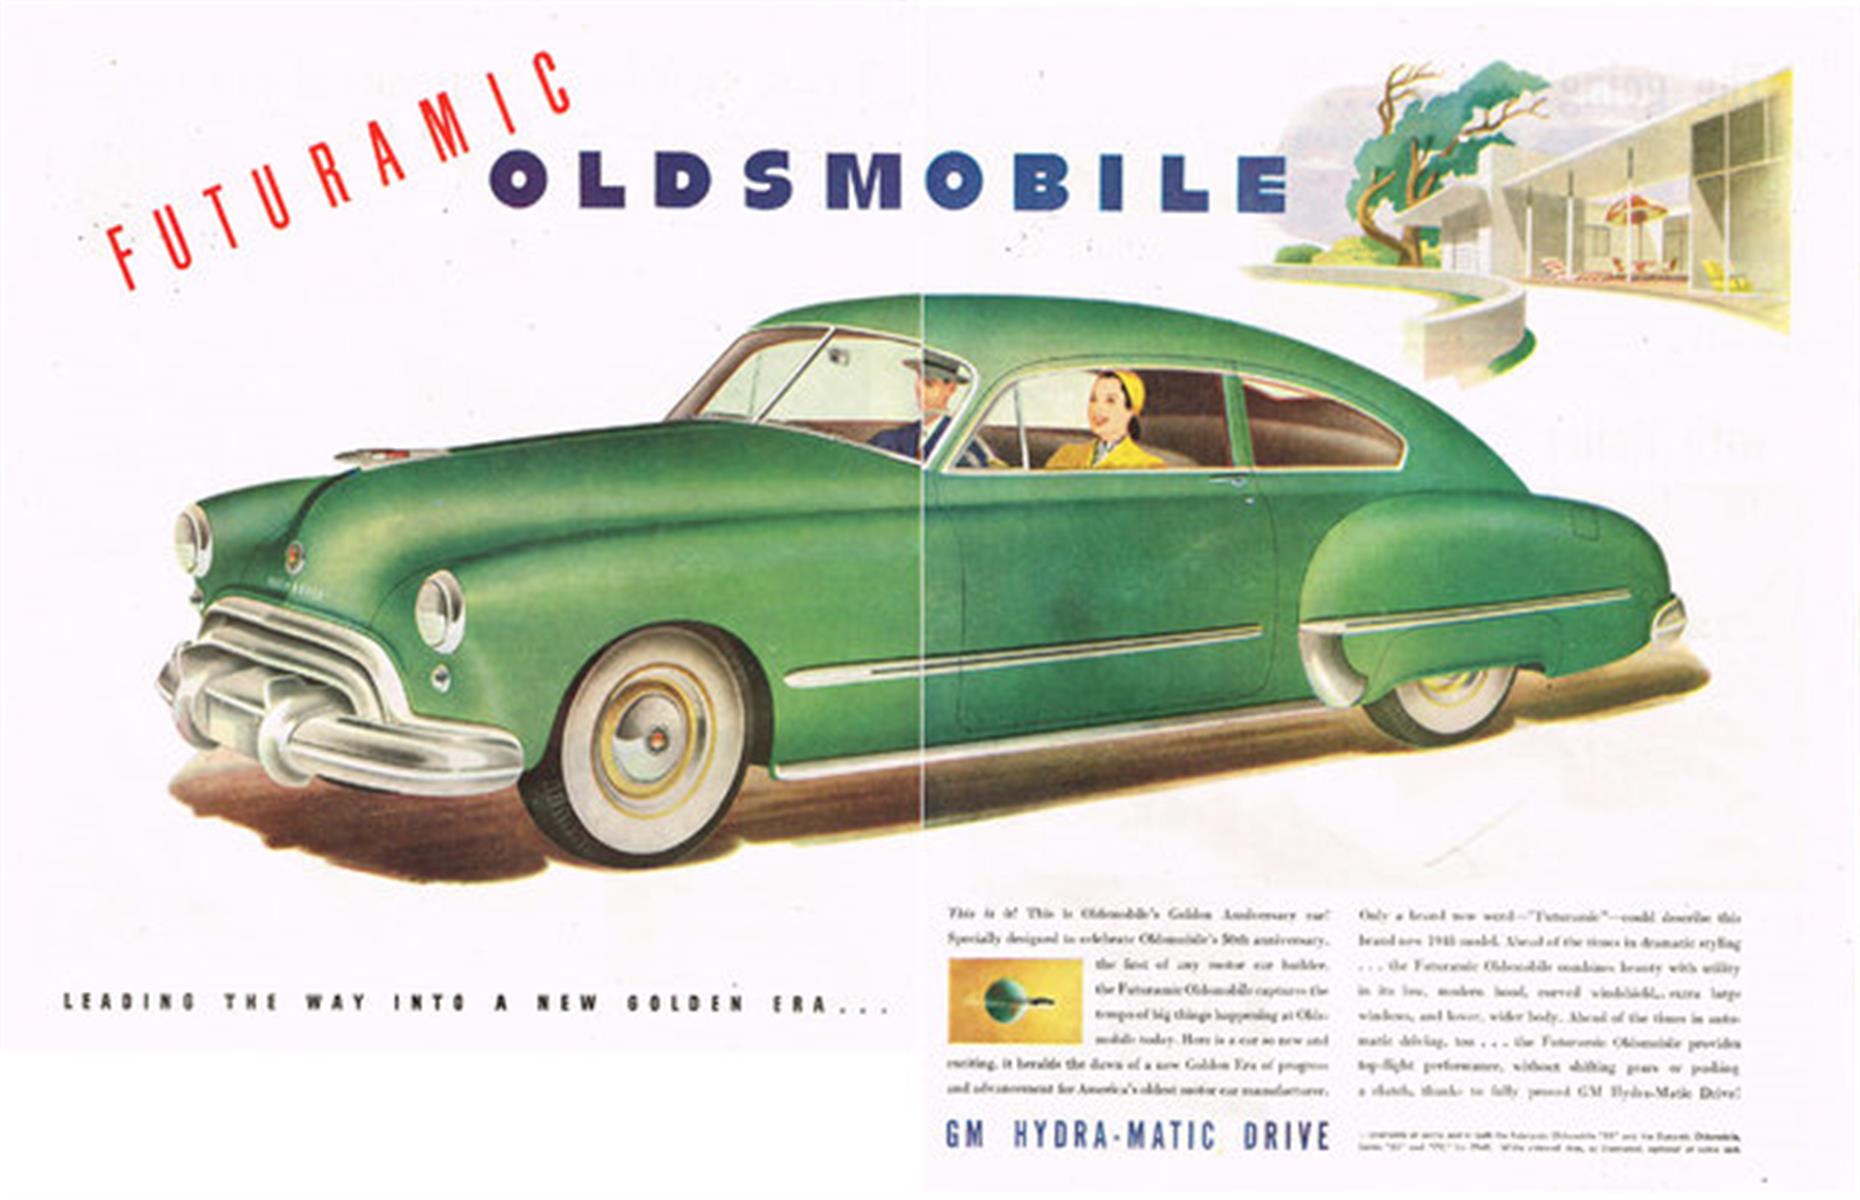 1948 General Motors